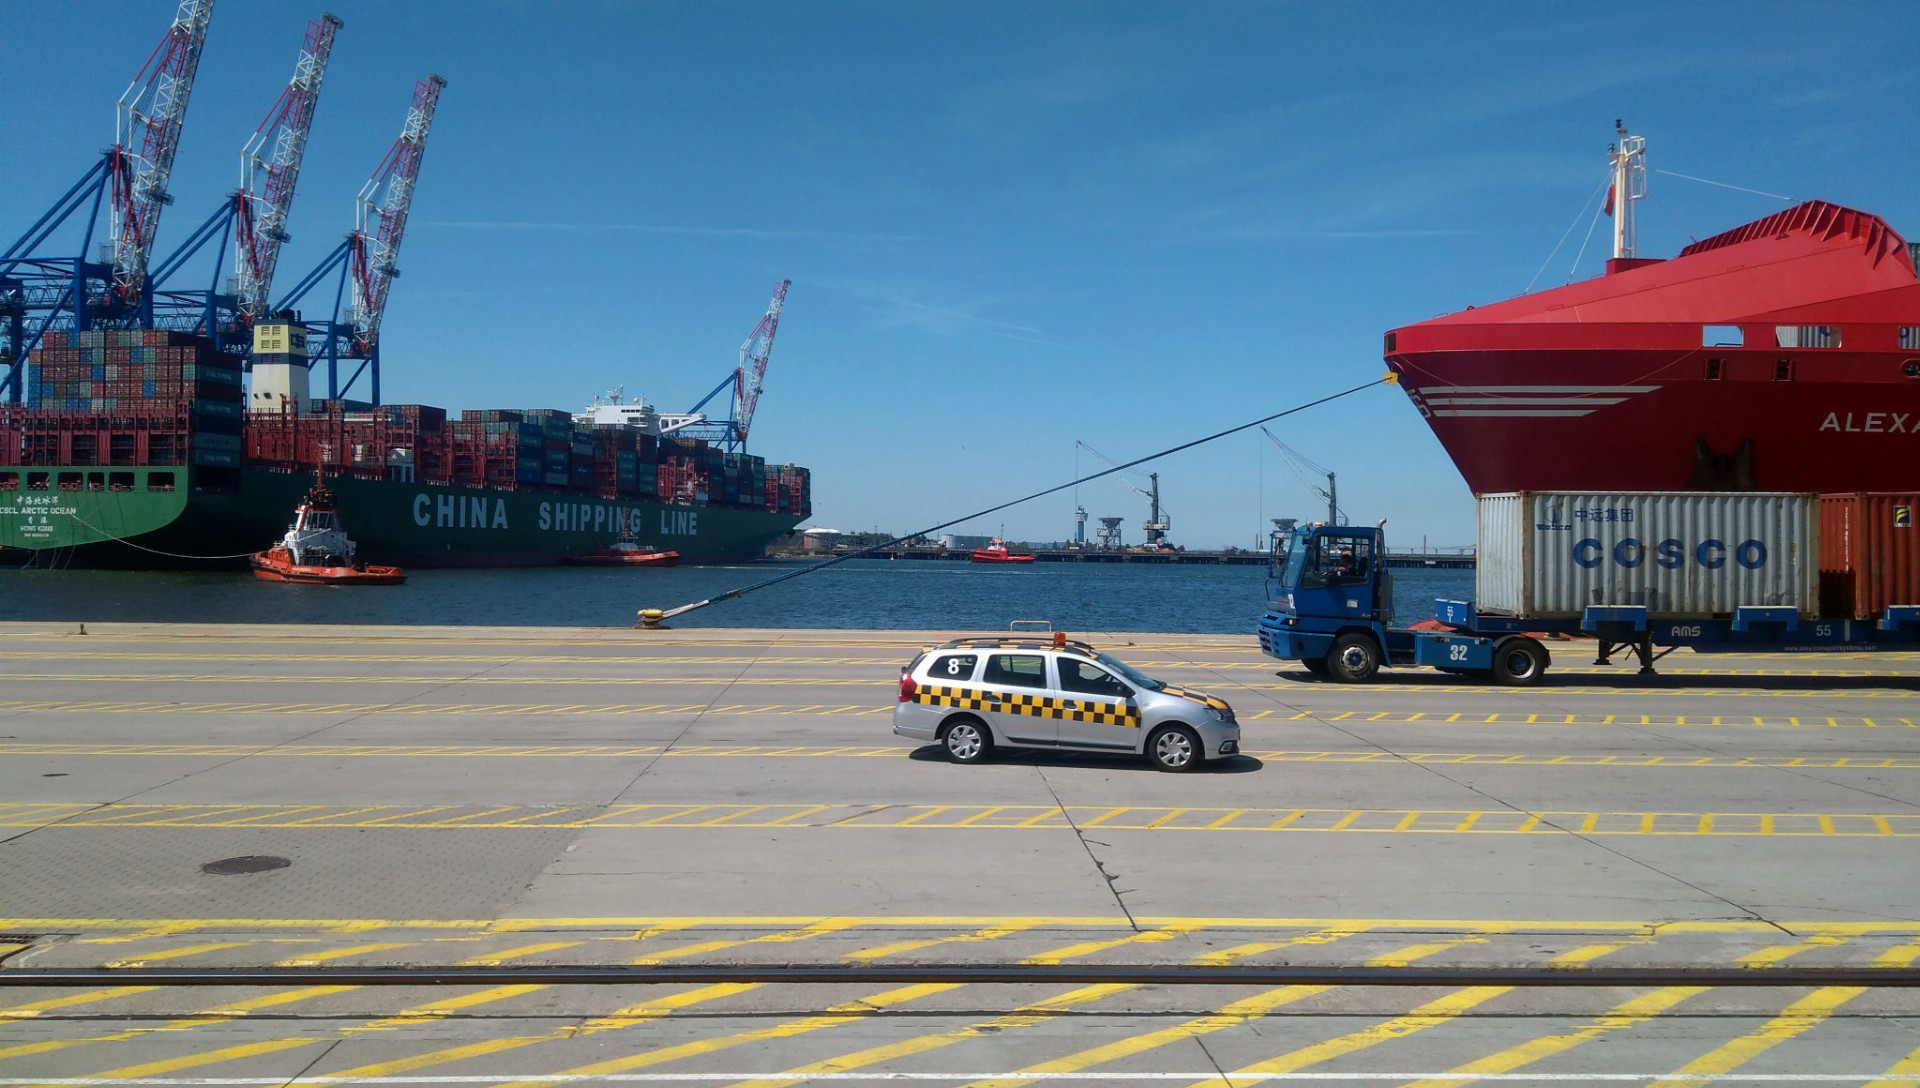 Najväčší kontajnerový terminál na Baltskom mori - Deepwater Container Terminal sa nachádza v Gdansku. Obsluhuje zaoceánske lode s dĺžkou viac ako 400 metrov. 